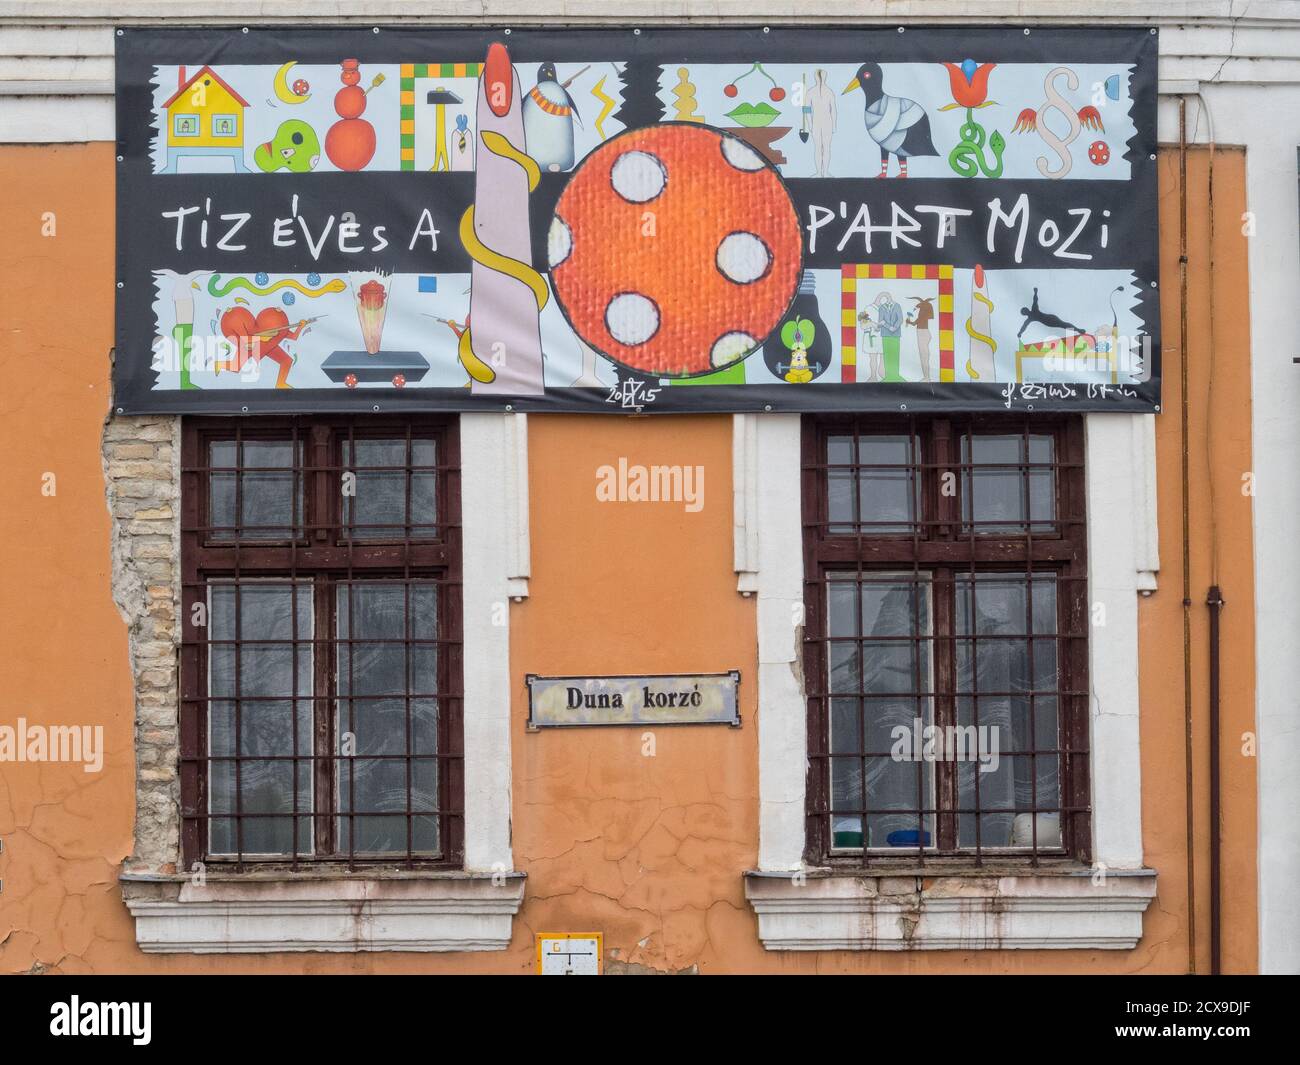 El cine P'Art de diez años de antigüedad en el paseo del Danubio (Duna Korzo) es una de las bases culturales dominantes de la ciudad - Szentendre, Hungría Foto de stock